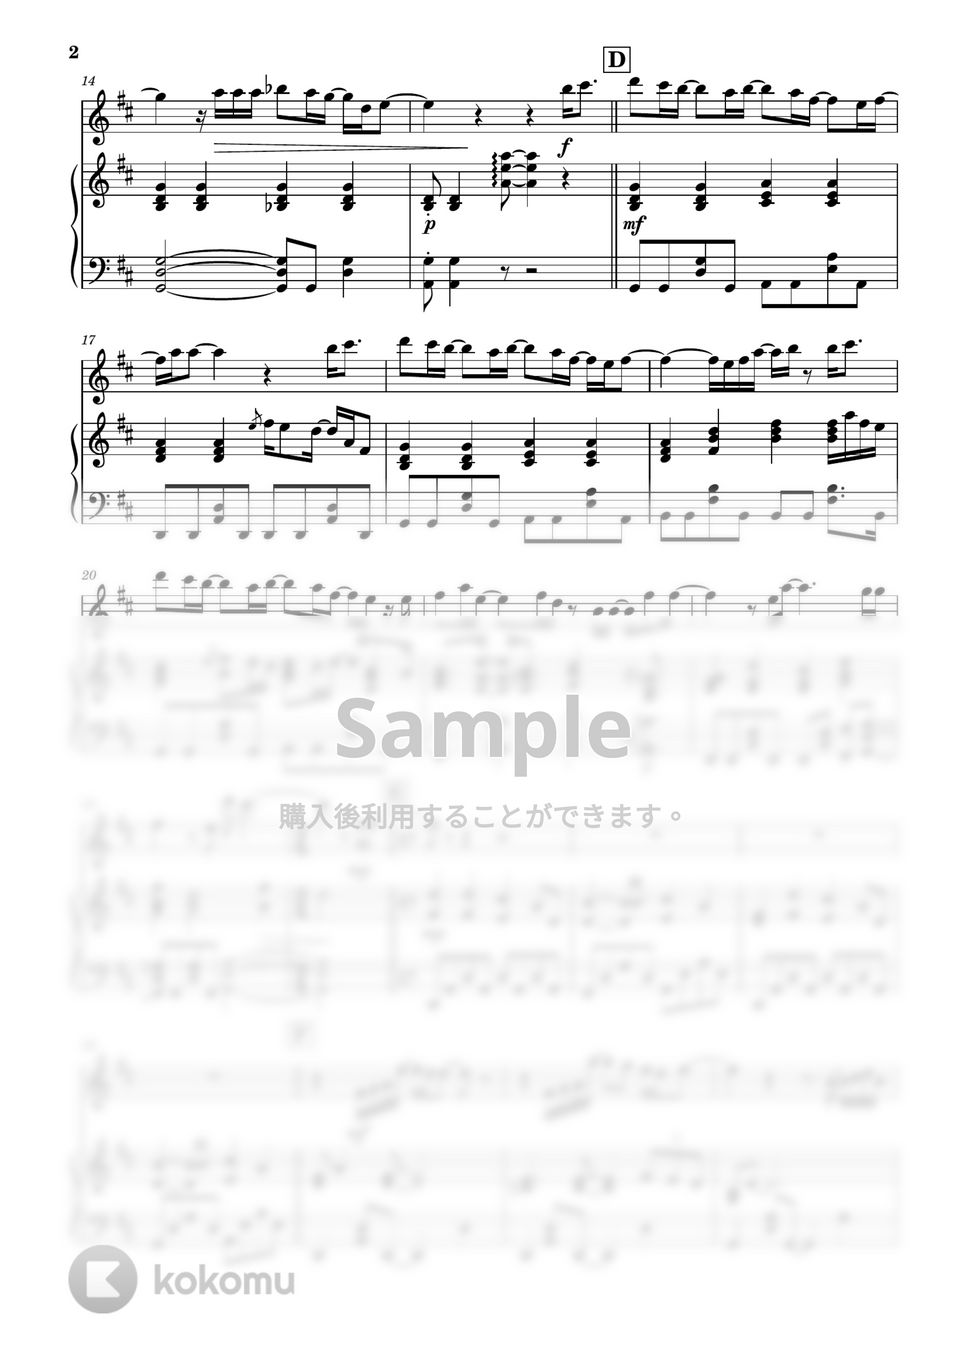 幾田りら - レンズ (フルート&ピアノ伴奏) by PiaFlu